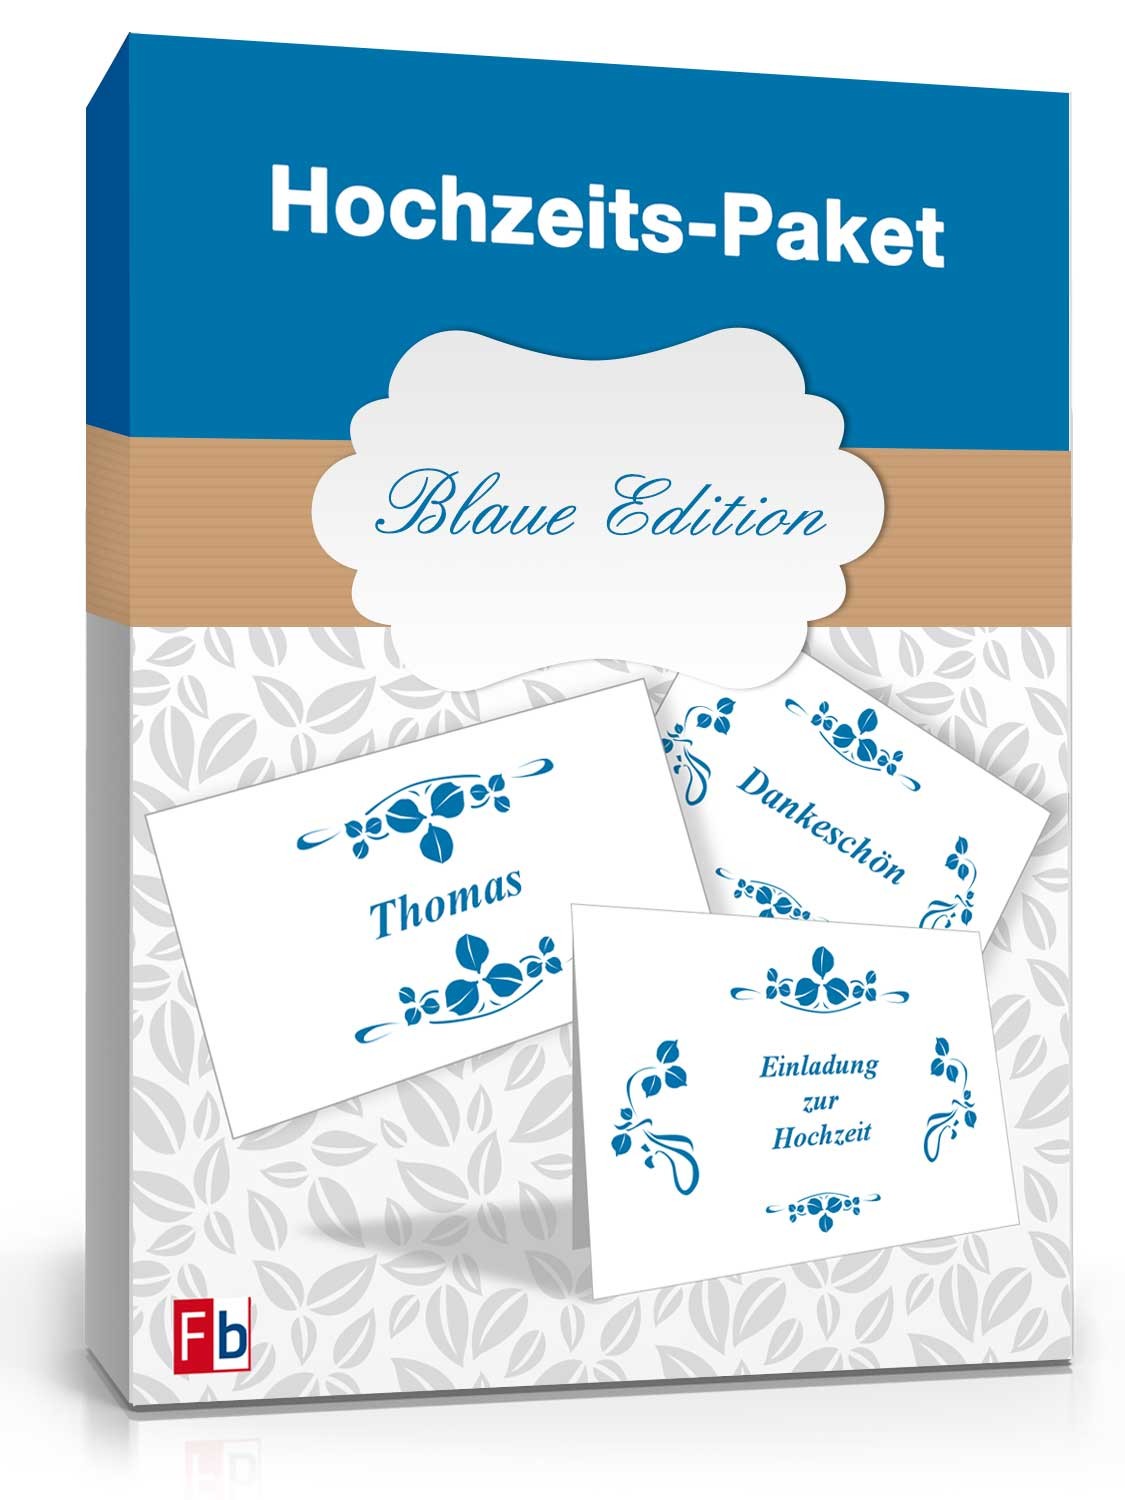 Hauptbild des Produkts: Hochzeits-Paket Blaue Edition